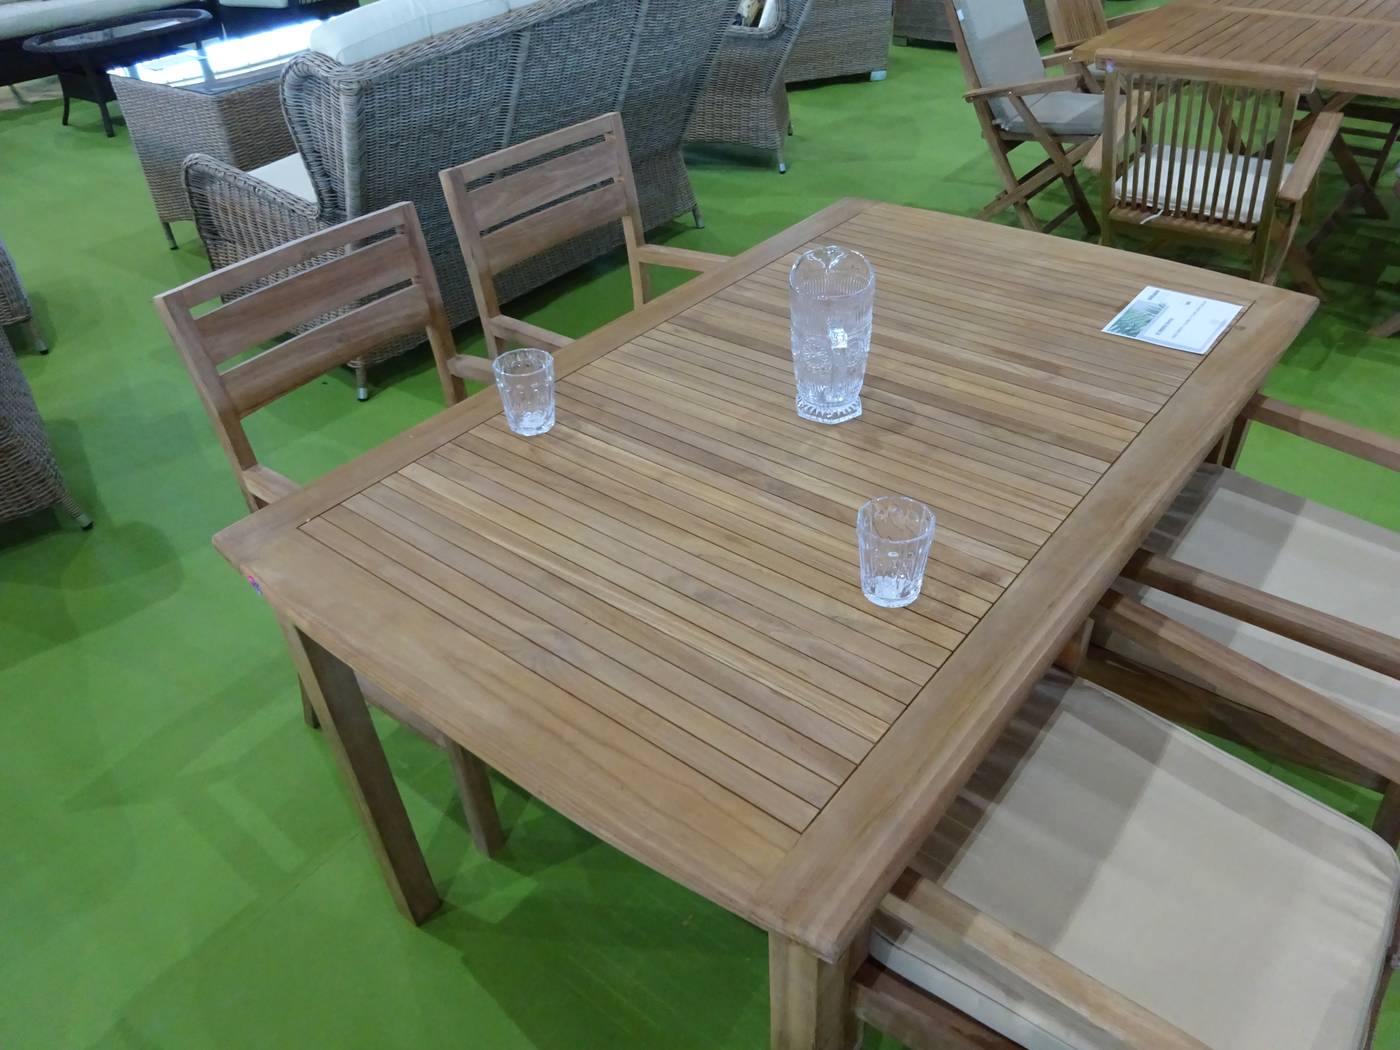 Conjunto Teka Mindoro/Saron 150-4 - Conjunto de madera de teka para jardín: mesa de 150 cm y 4 sillones